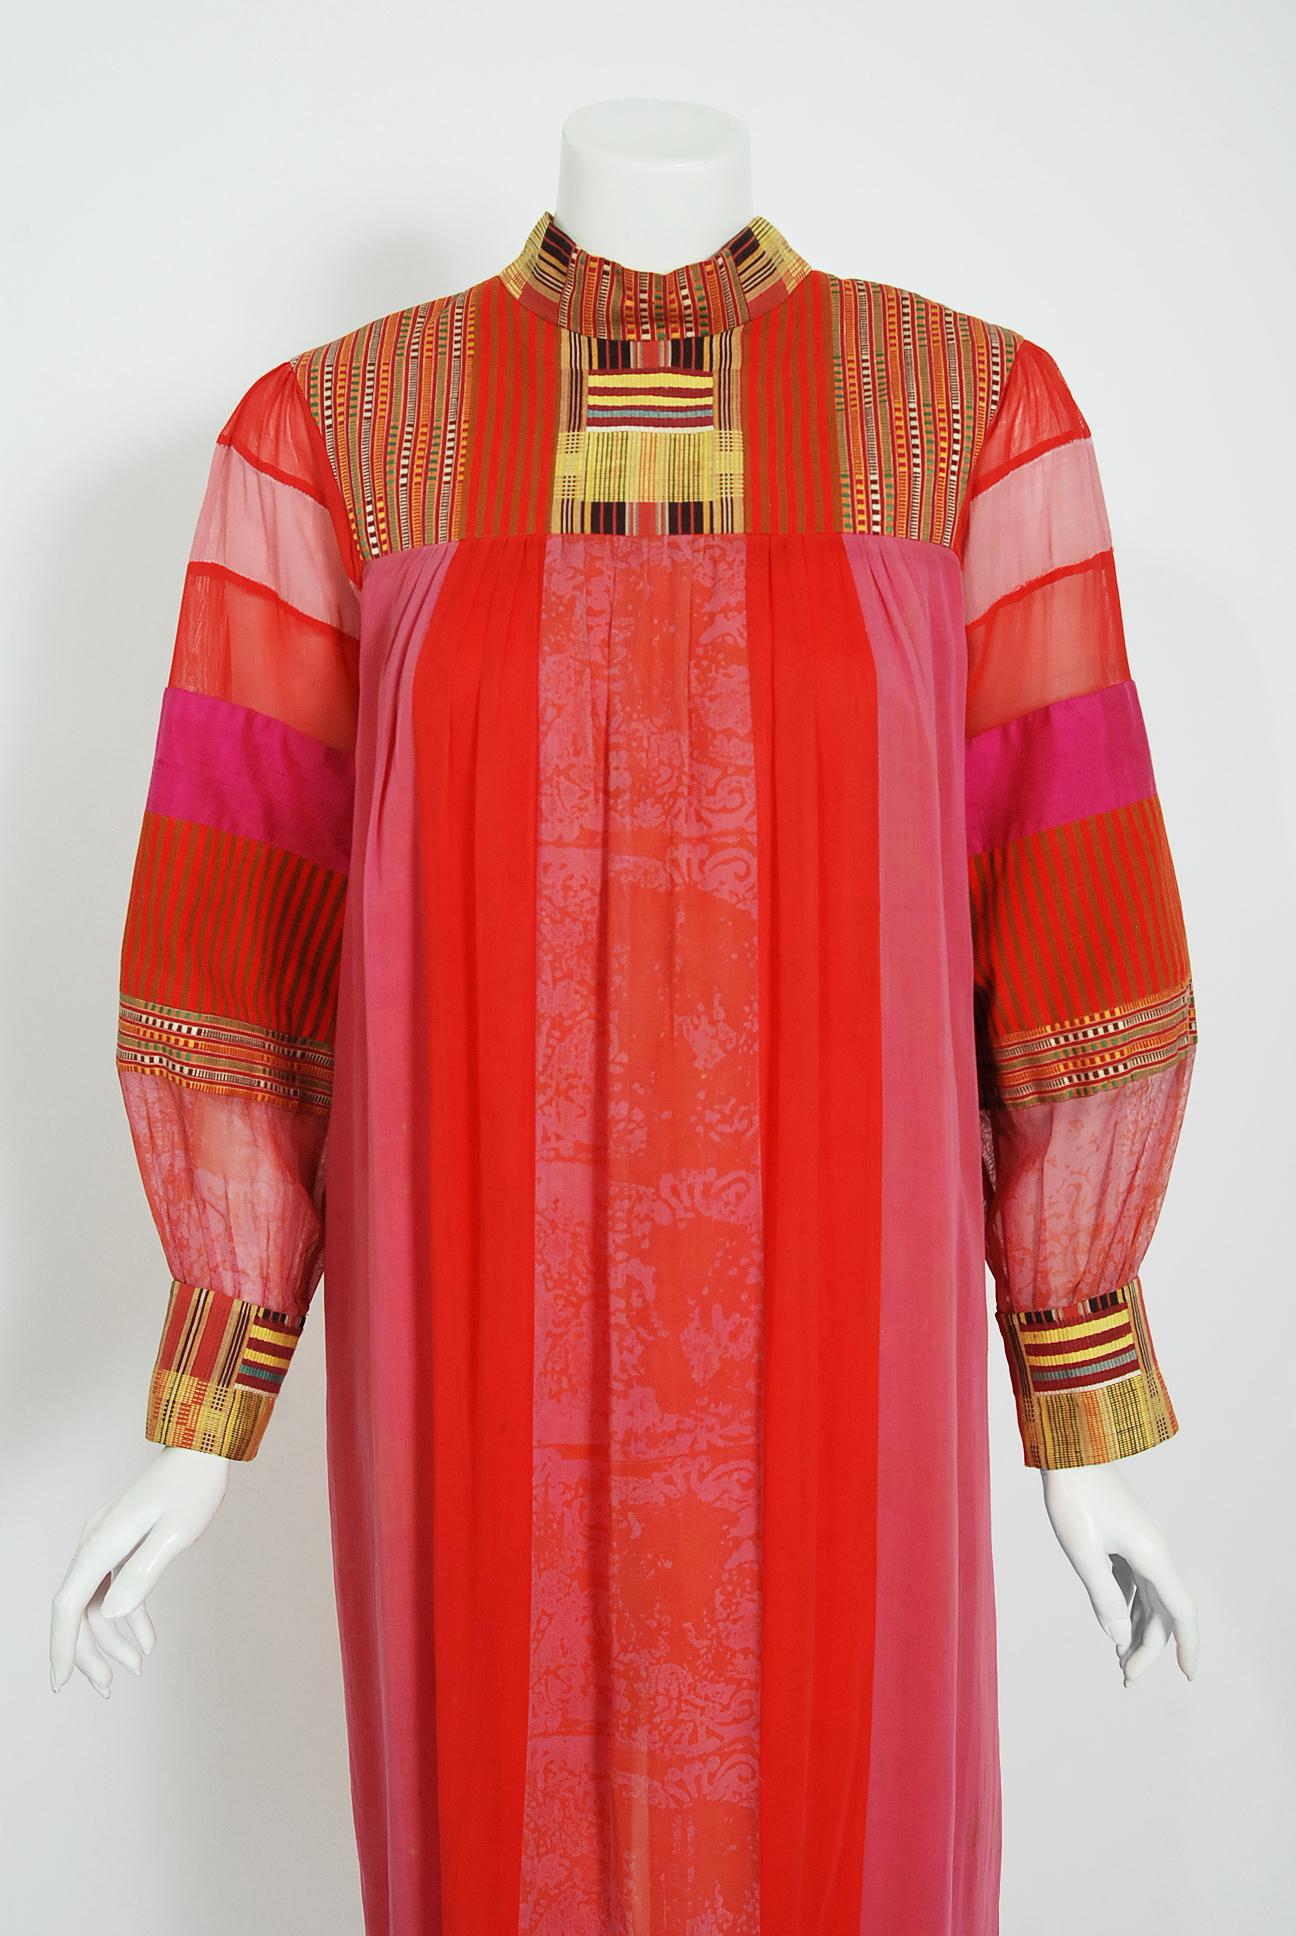 Une robe en coton brodé de Joann Lopez, datant du début des années 1970, tout droit sortie de la garde-robe de Zsa Zsa Gabor. Cette robe date de l'apogée de la folie bohème et a été vendue à Zsa Zsa dans une boutique haut de gamme de Los Angeles. Le